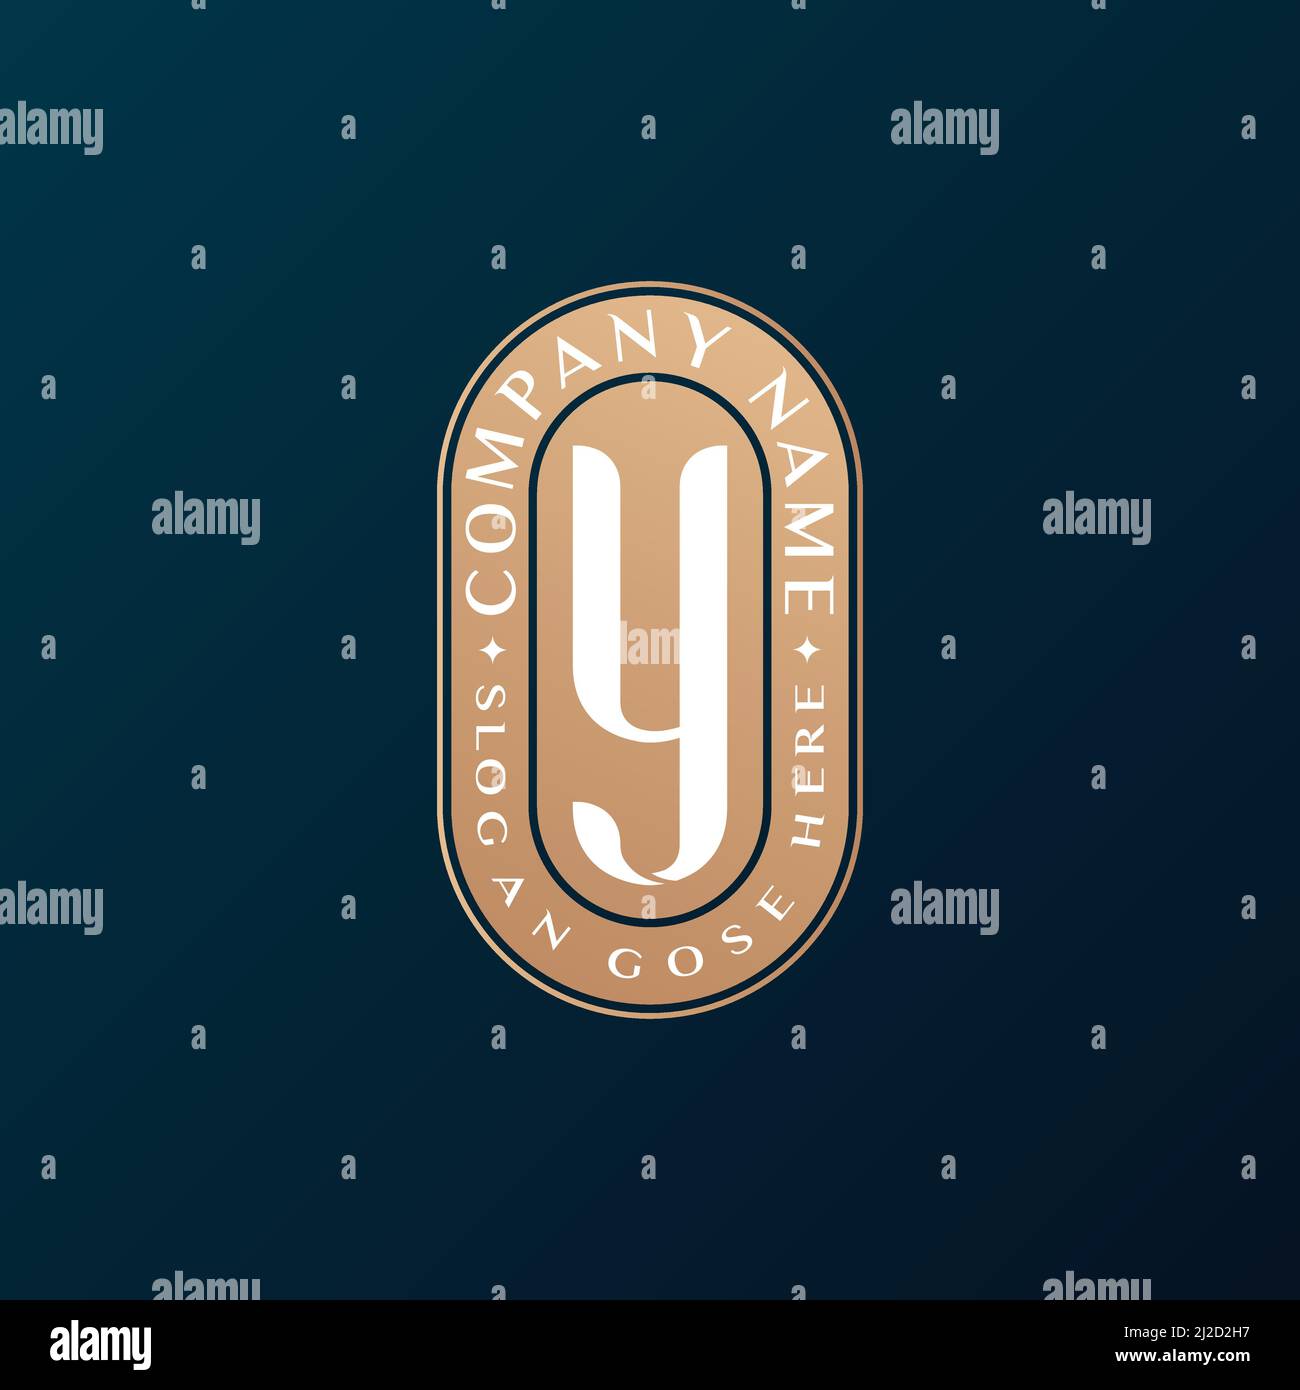 Abstrait Emblem Premium luxe identité d'entreprise élégante lettre y logo design Illustration de Vecteur